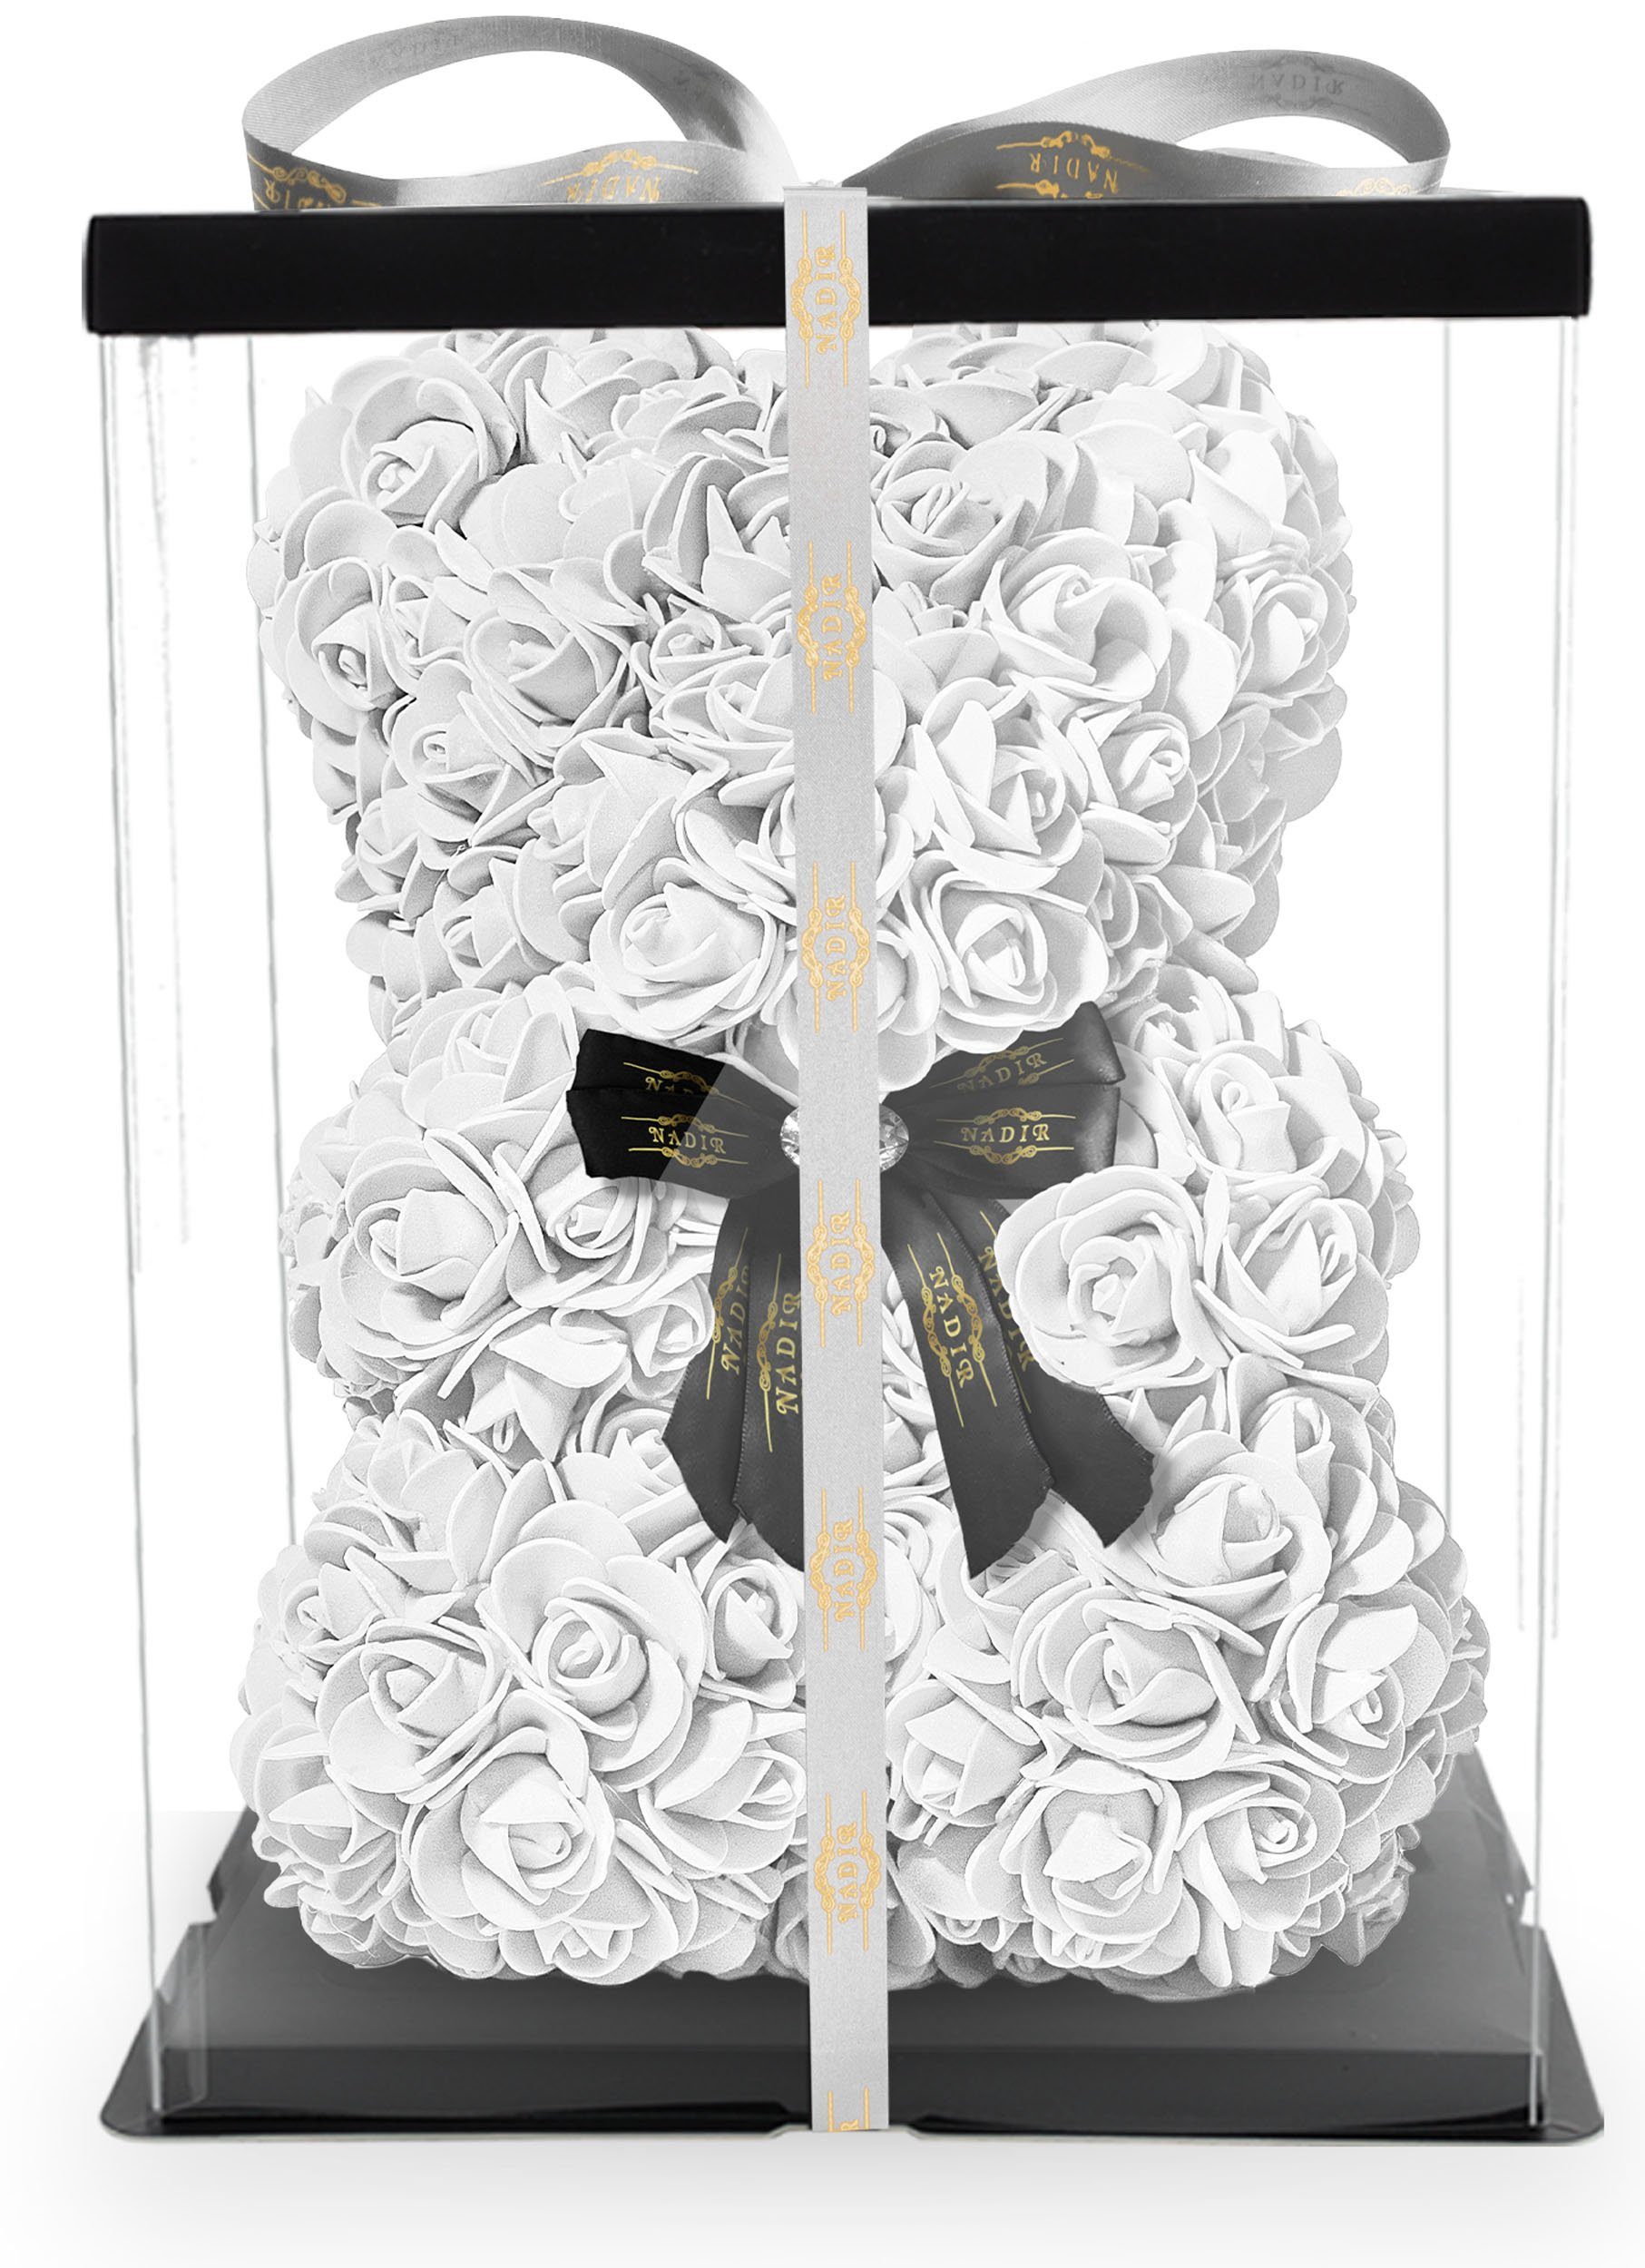 Kunstblume »NADIR Rosenbär 25 cm mit Schleife / inklusive vorverpackter  Geschenkbox/ Valentinstag Muttertag Geburtstag Jahrestag Infinity Rosebear  Bär aus Rosen Flower Teddy Teddybär Blütenbär« Künstliche Pflanze, NADIR  online kaufen | OTTO